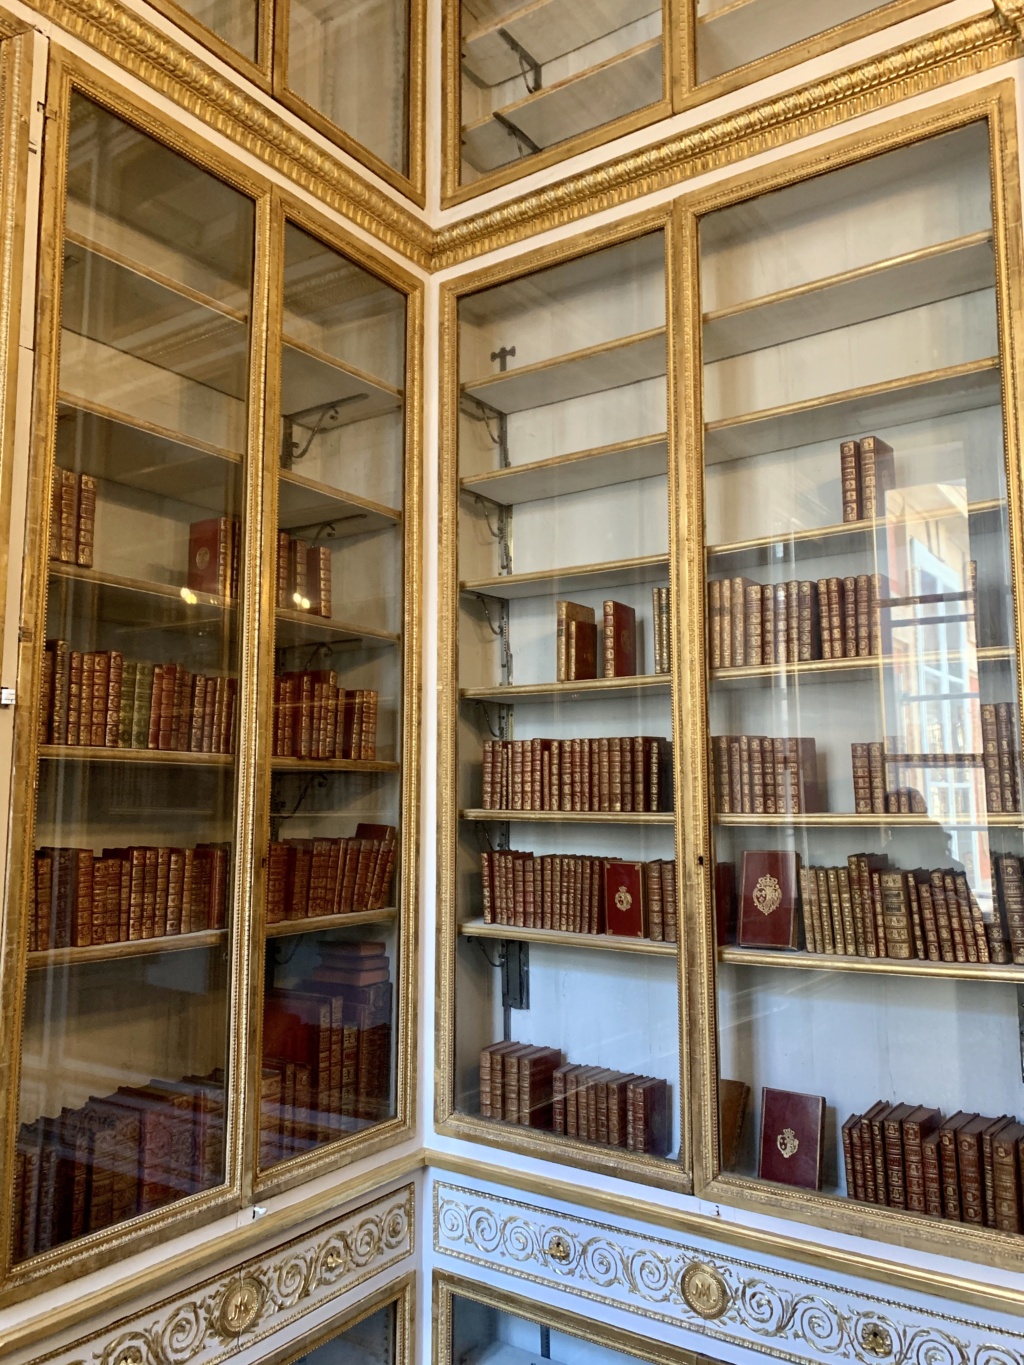 La bibliothèque de la reine au château de Versailles 9e2deb10